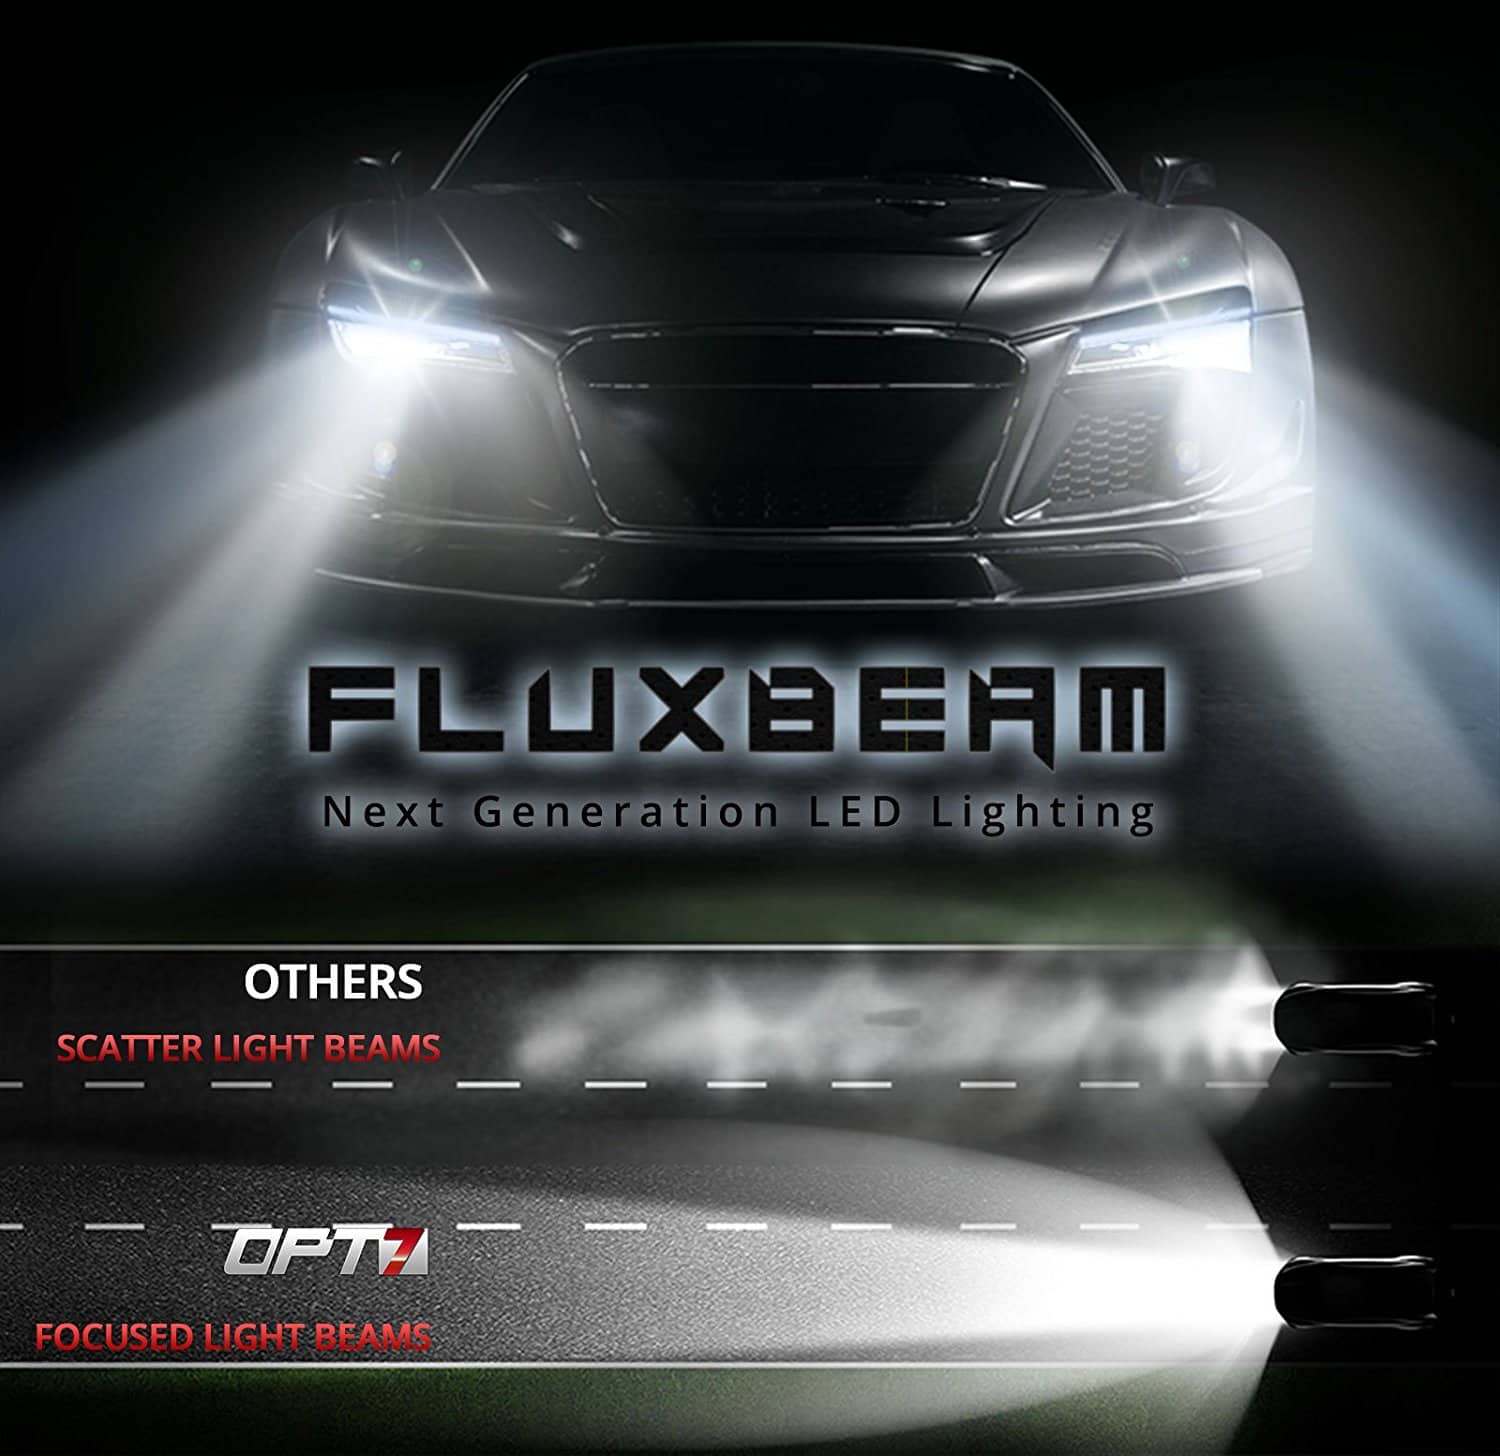 OPT7 Fluxbeam LED Headlight Kit Review